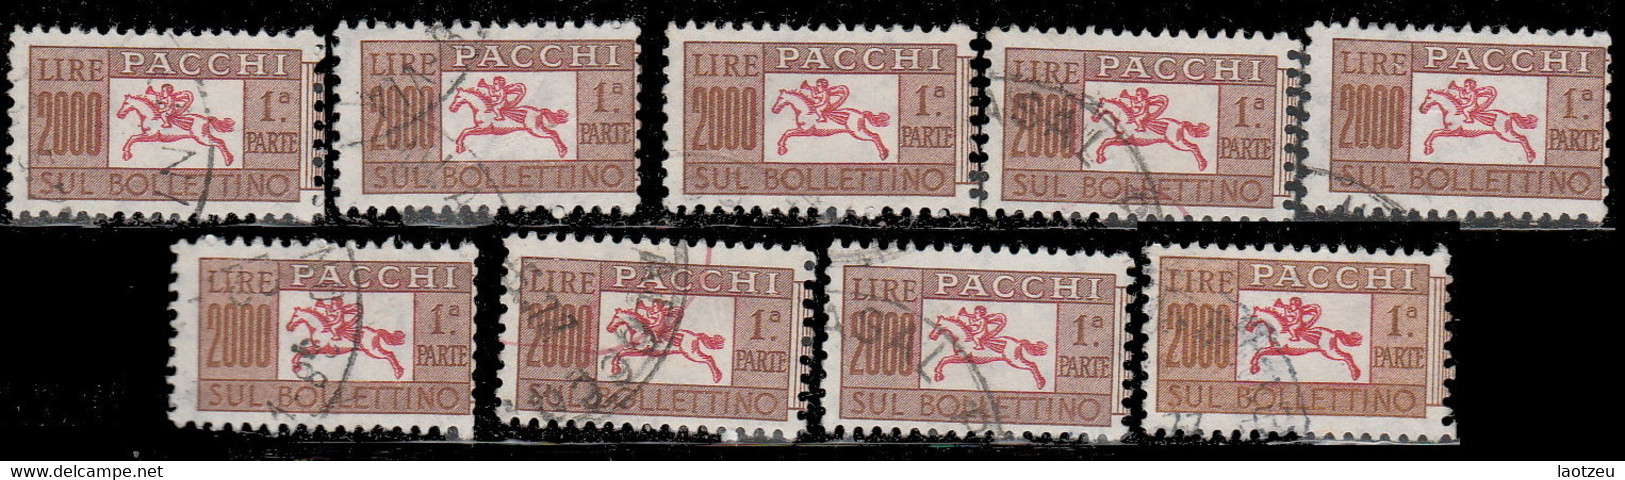 Italie Colis Postaux 1956. ~ CP 90 (par 9) - 2 000 L. Cor De Chasse - Paquetes Postales